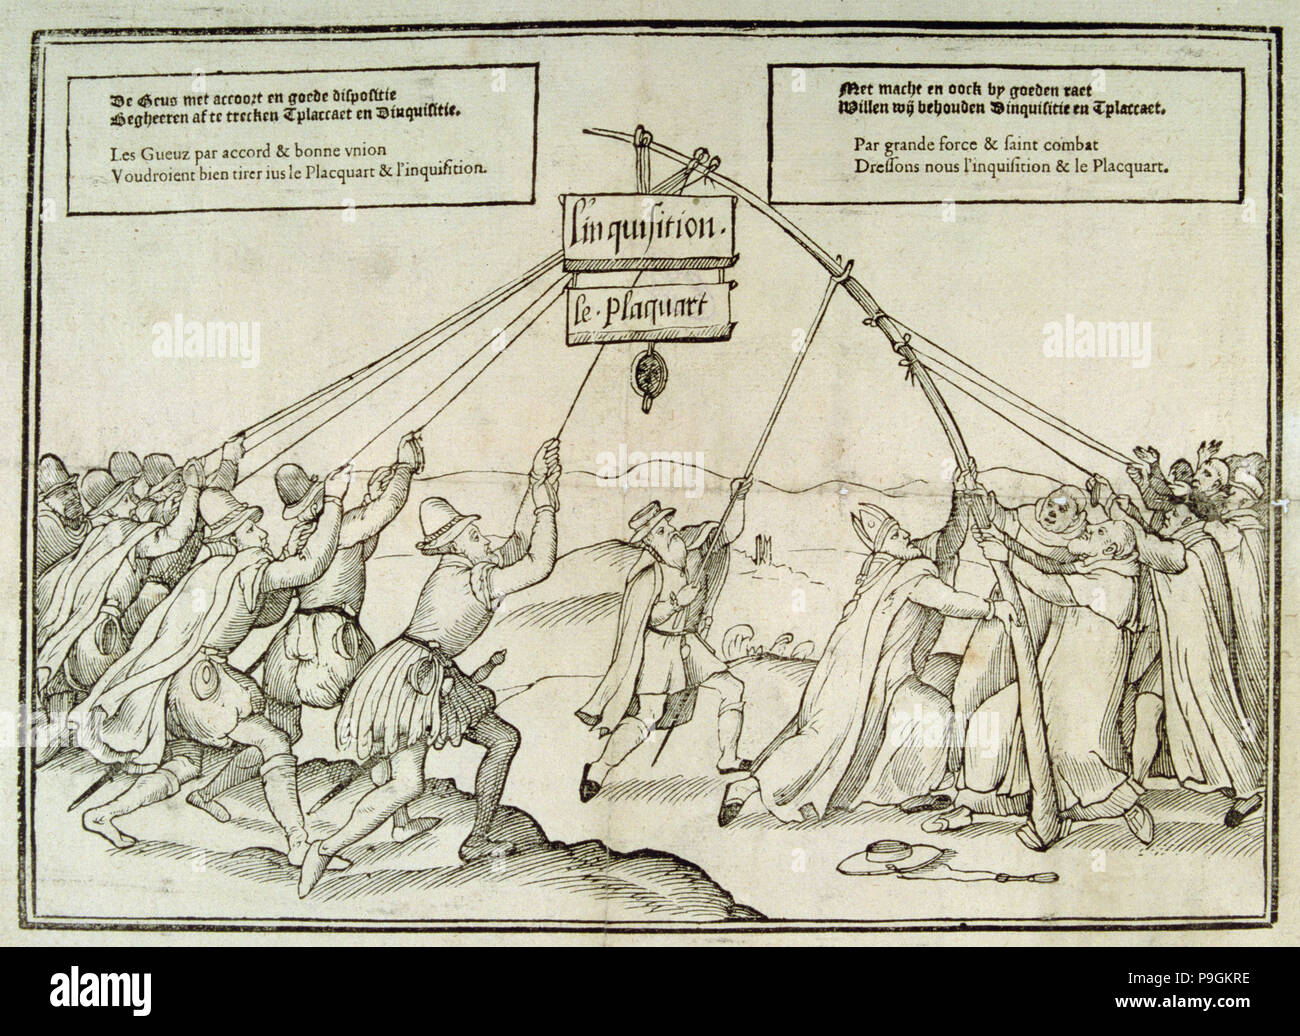 Olandese incisione satirico sull'Inquisizione. Foto Stock